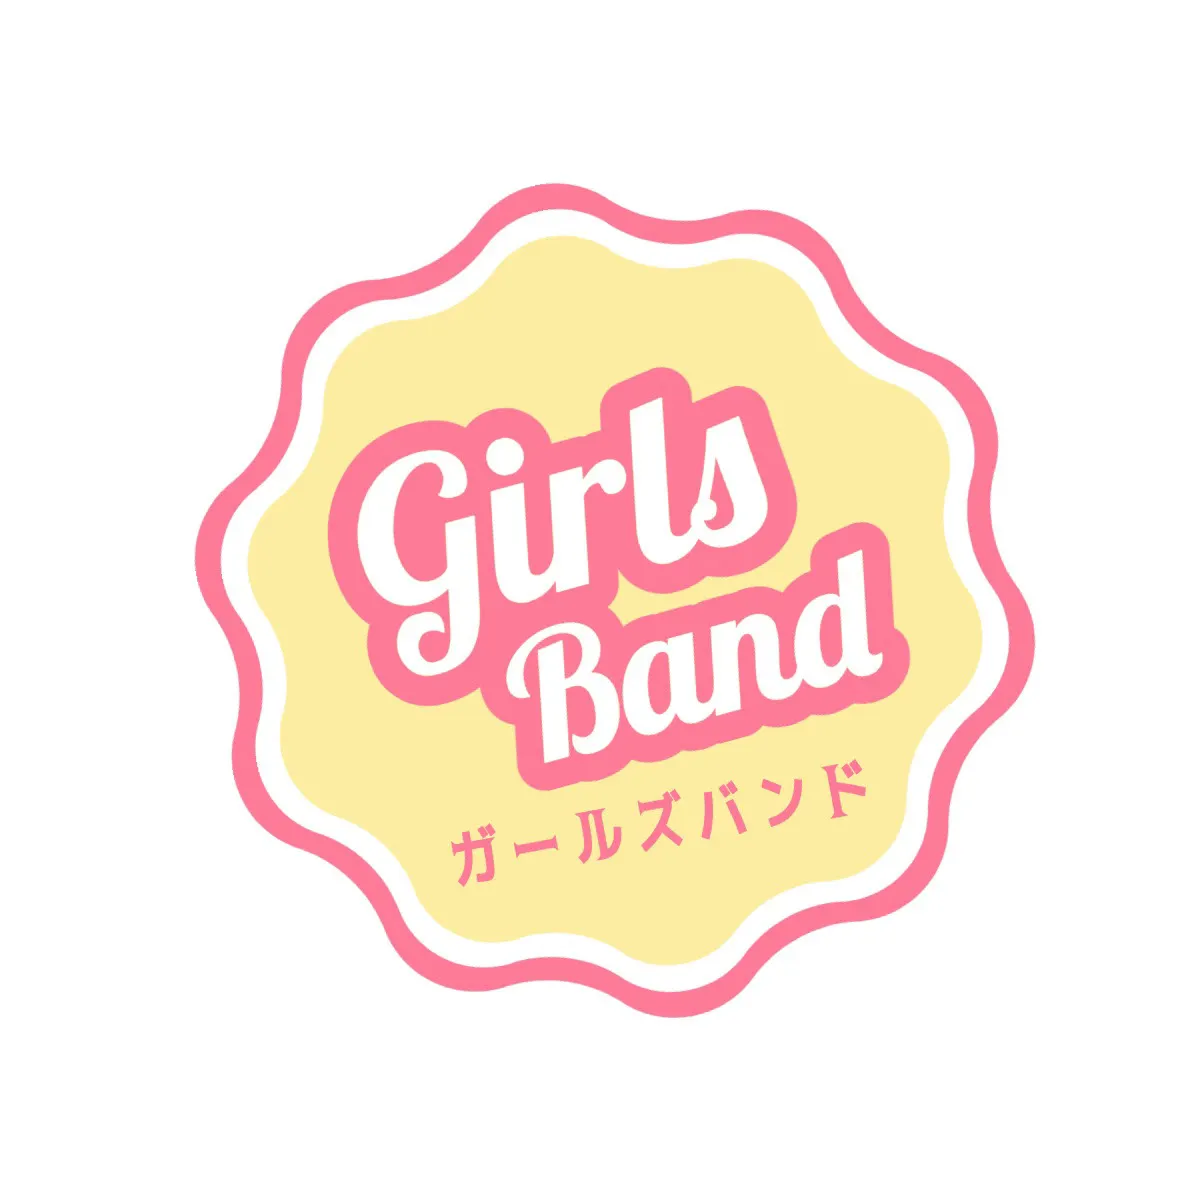 Pink pop band logo